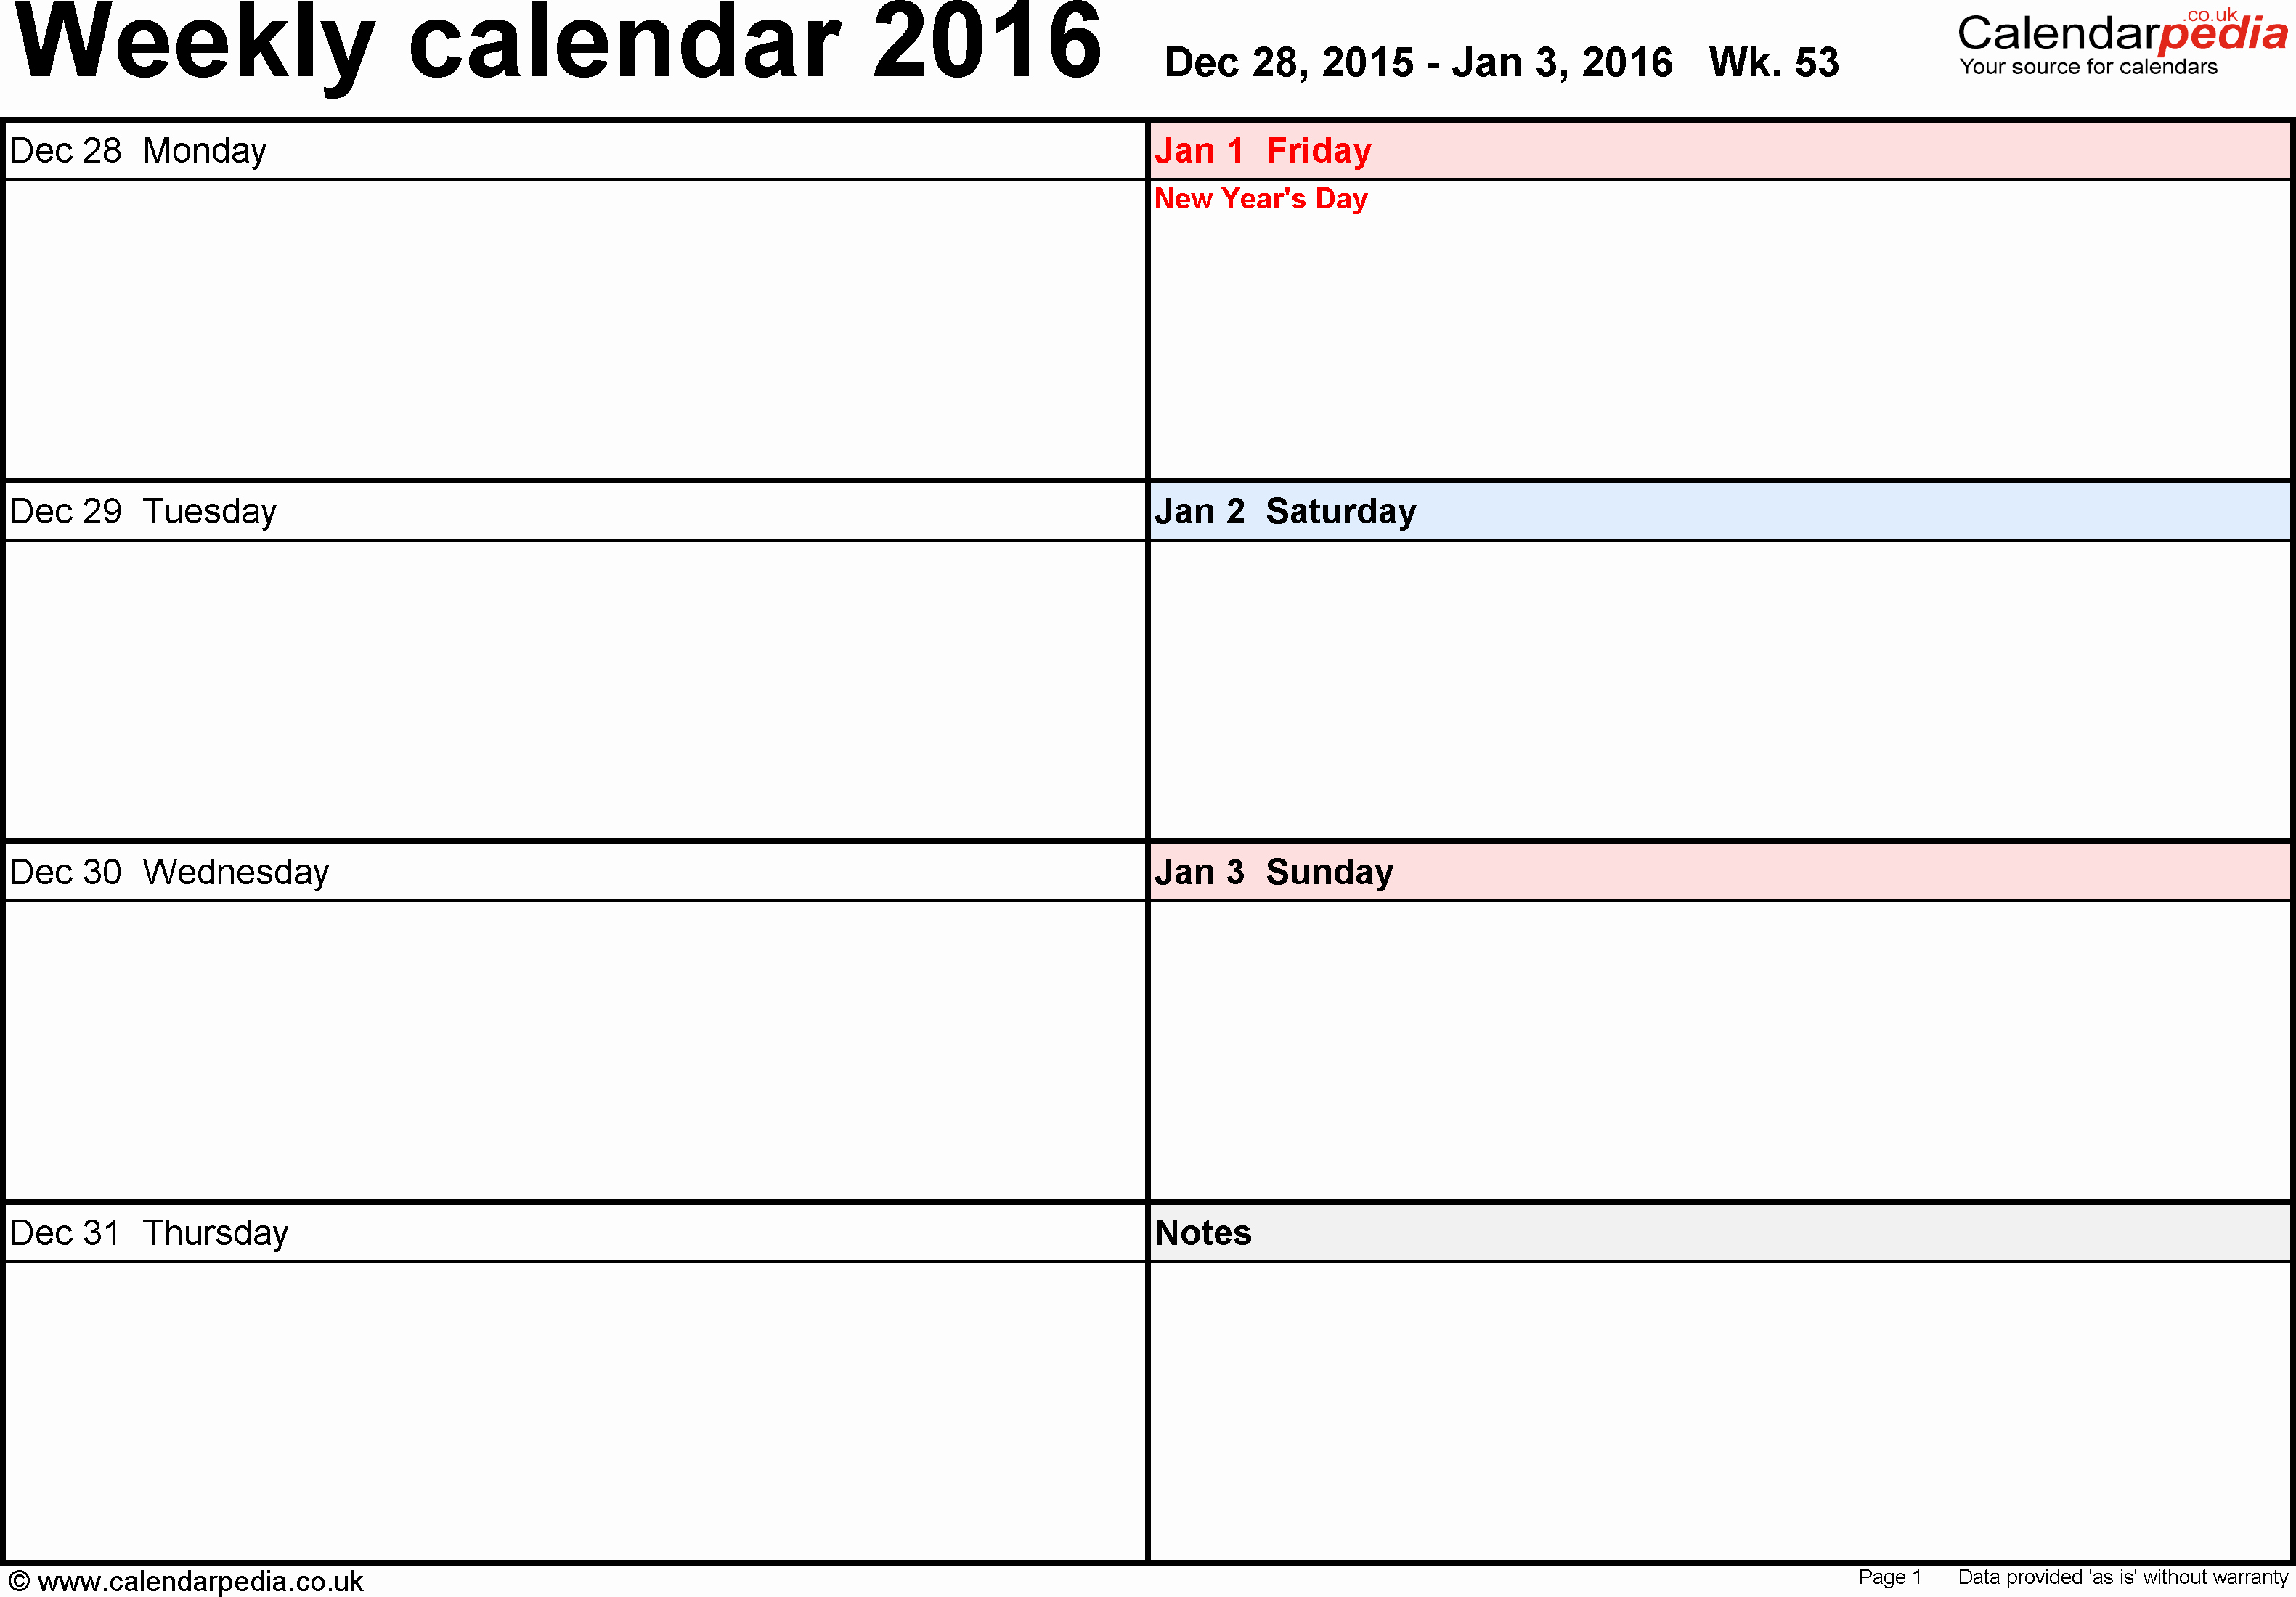 Week by Week Calendar Template Lovely Weekly Calendar 2016 Uk Free Printable Templates for Word